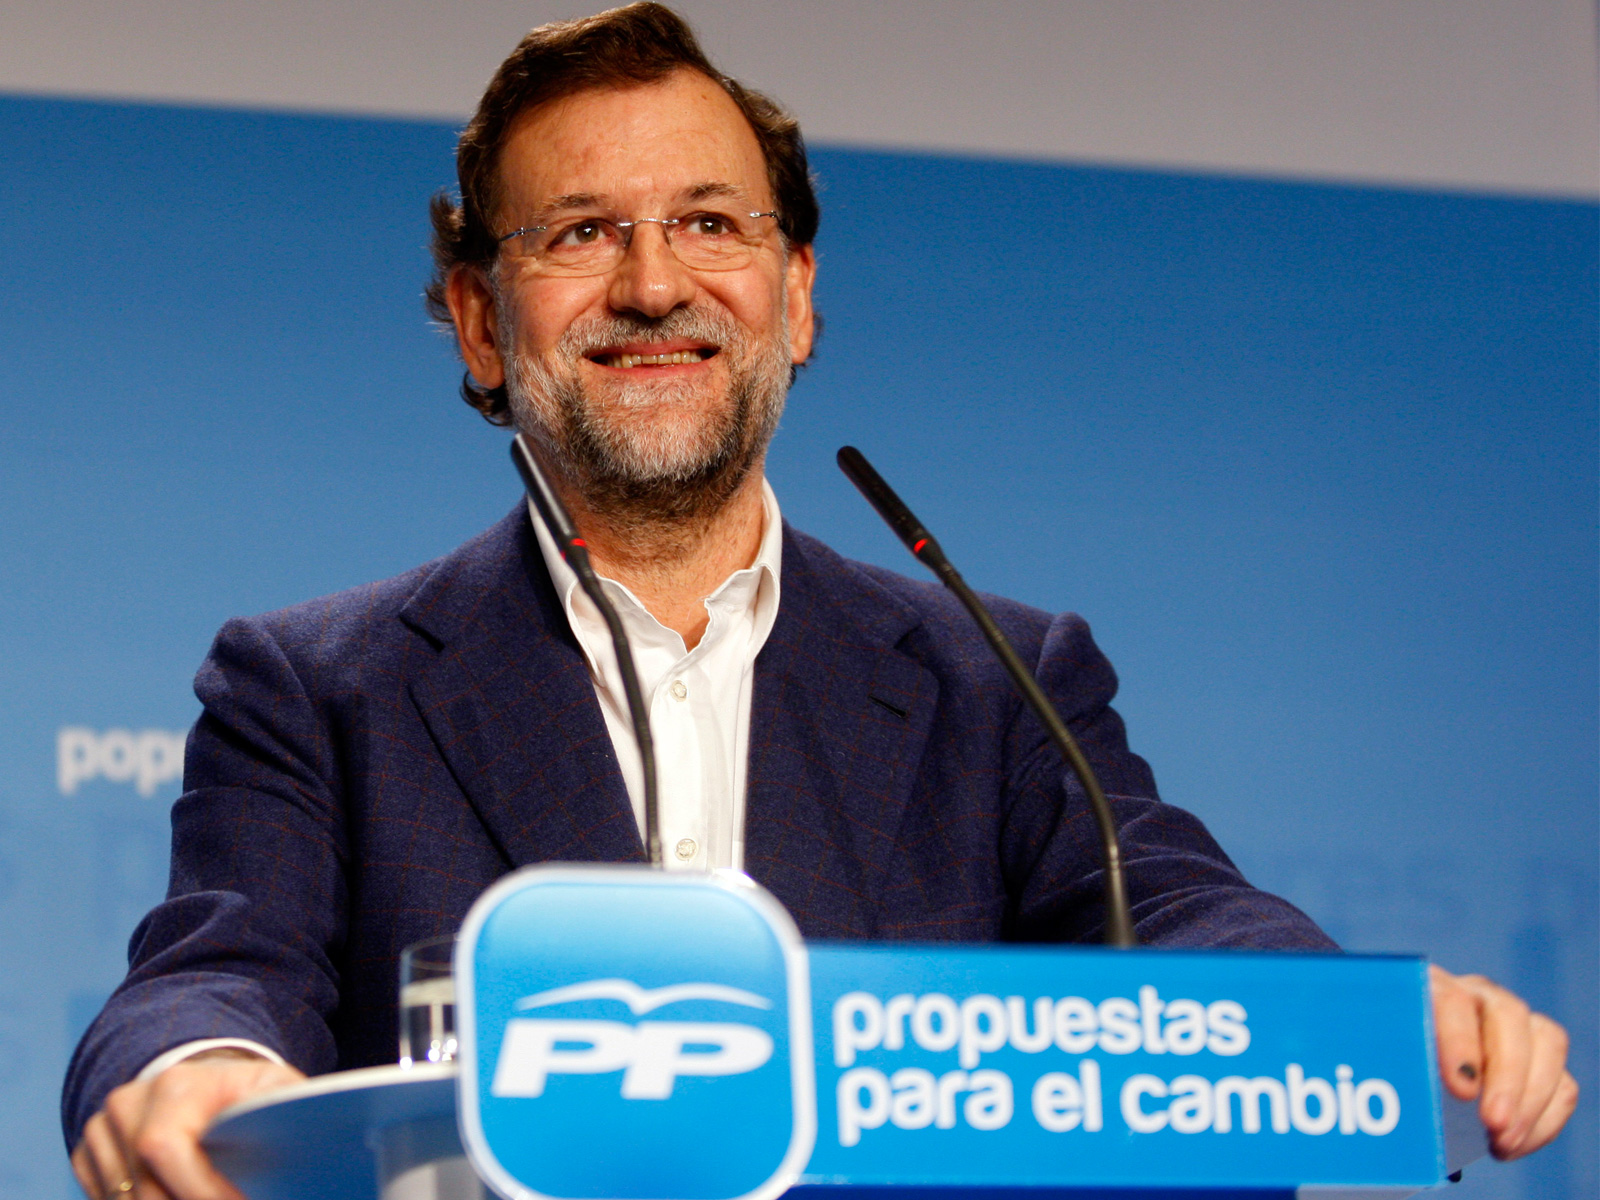 Mariano Rajoy Nuevo presidente de España